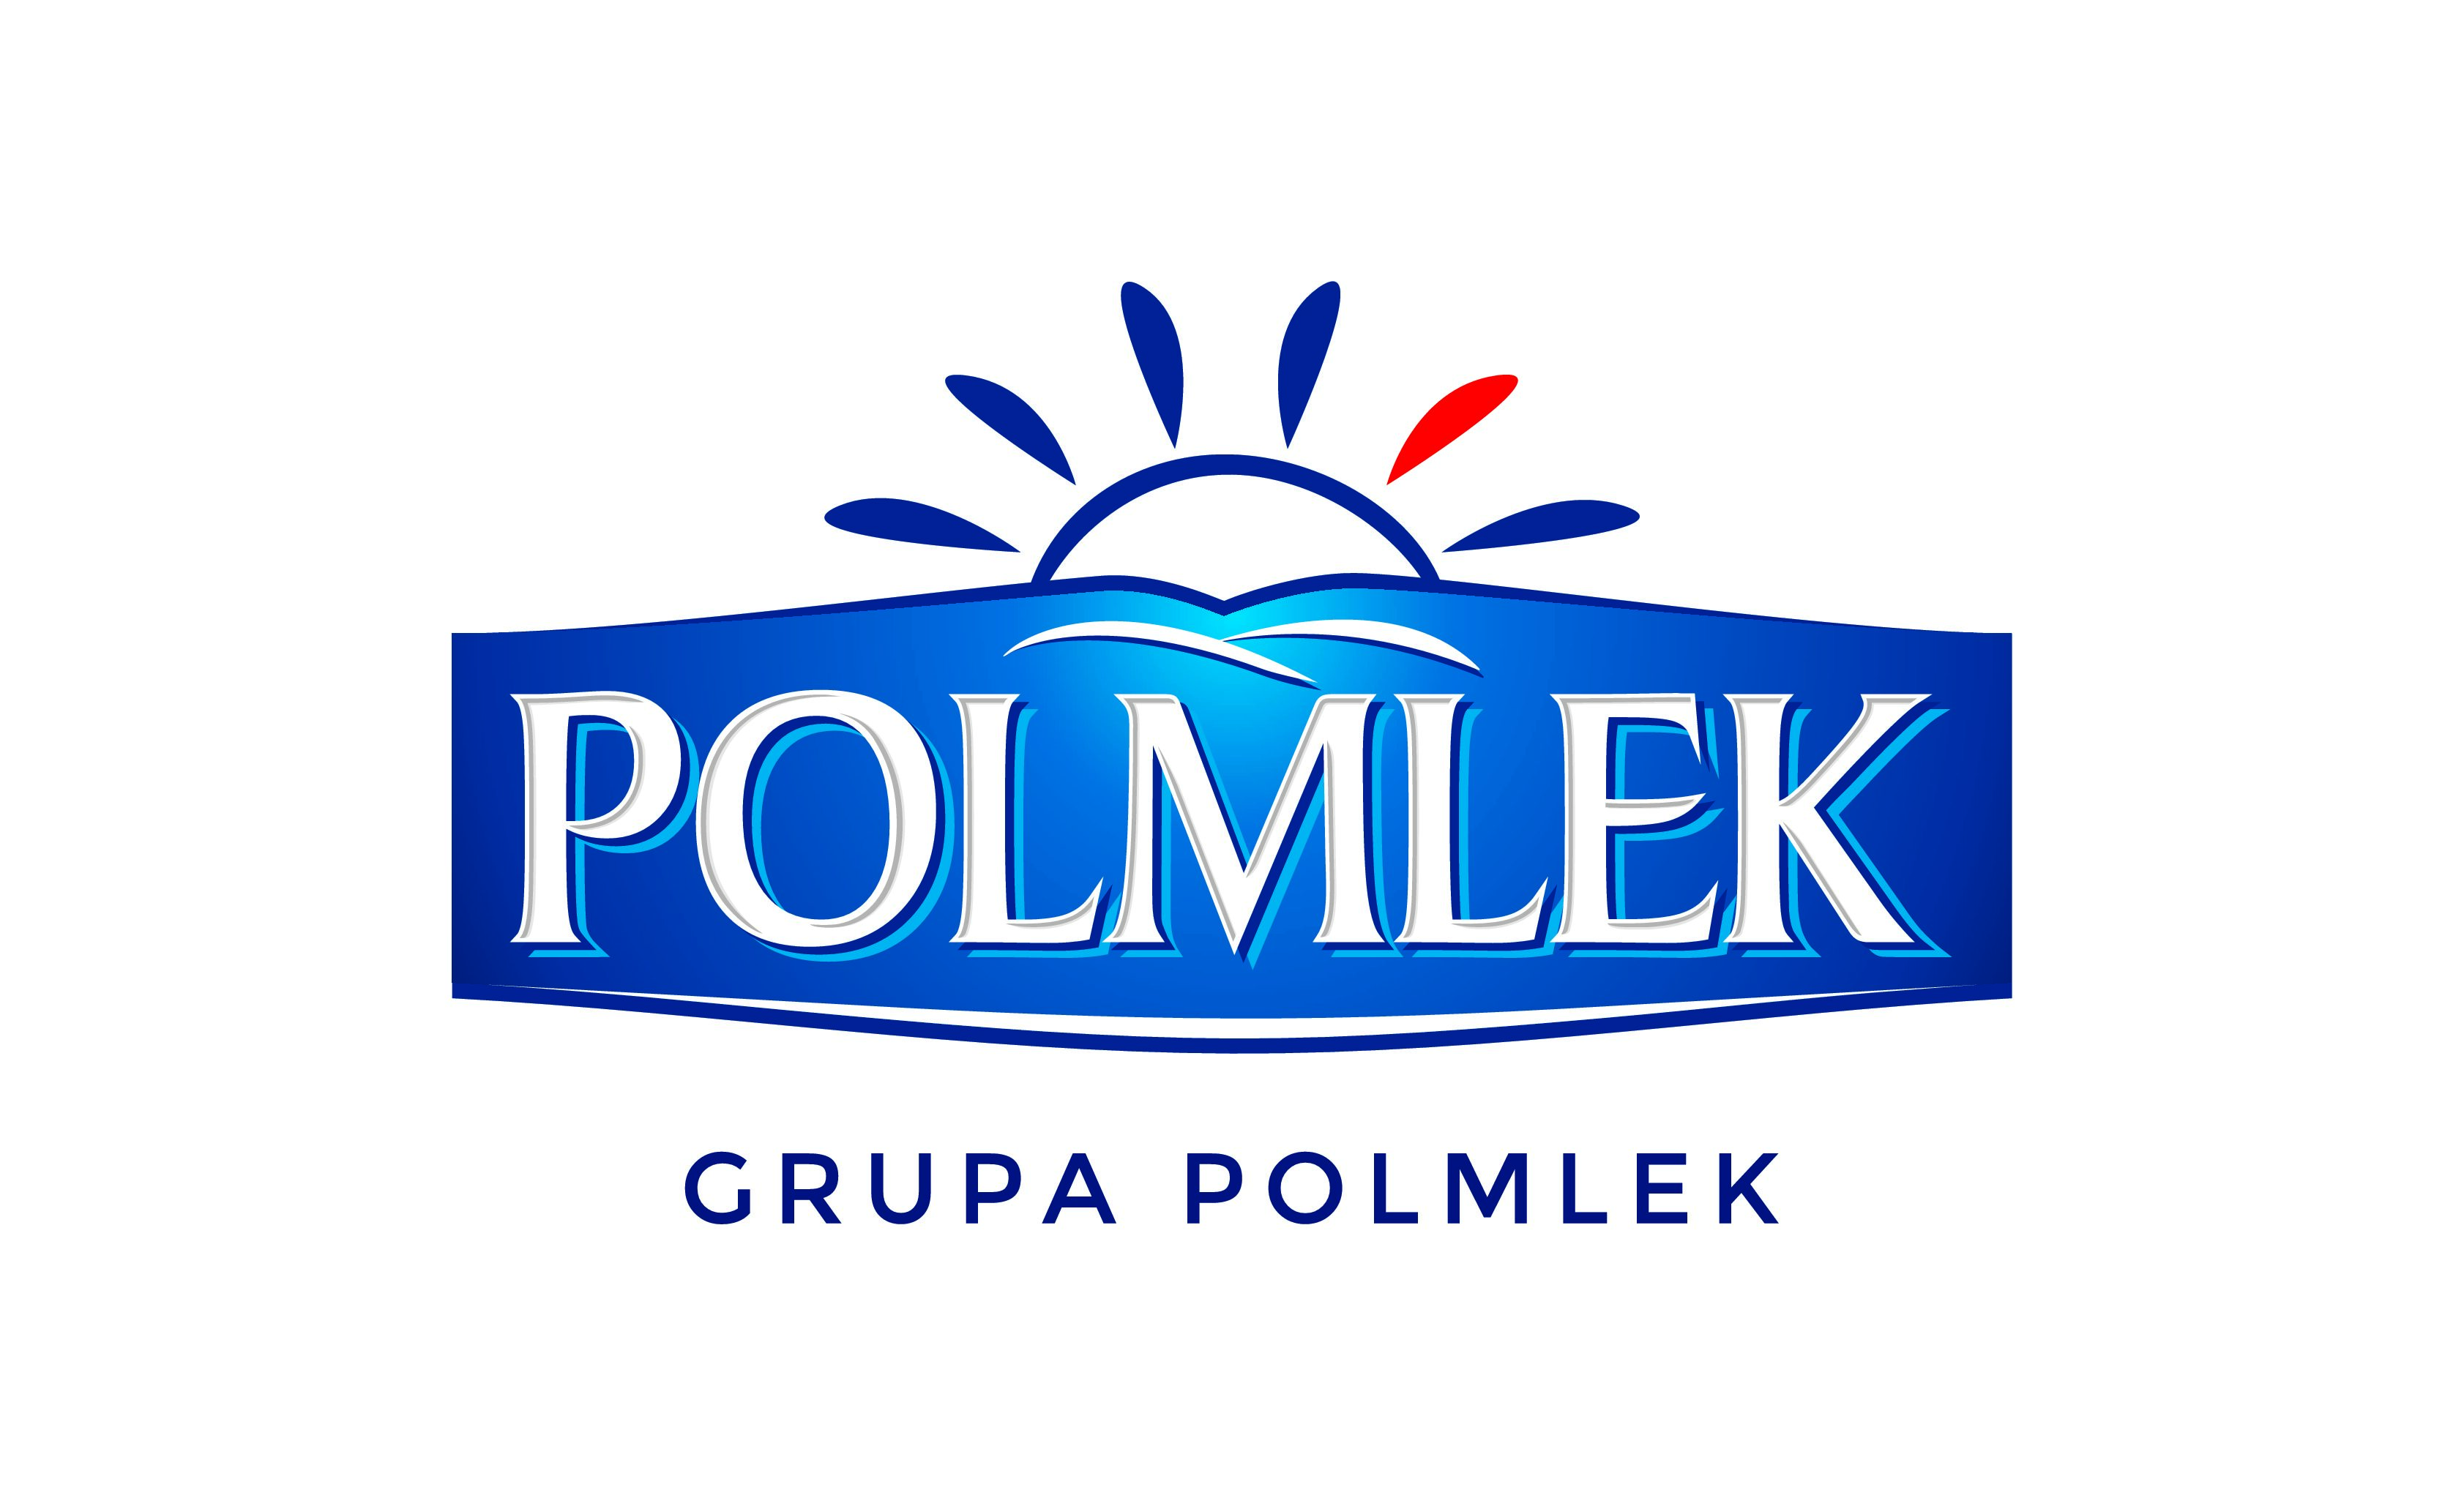 Grupa Polmlek